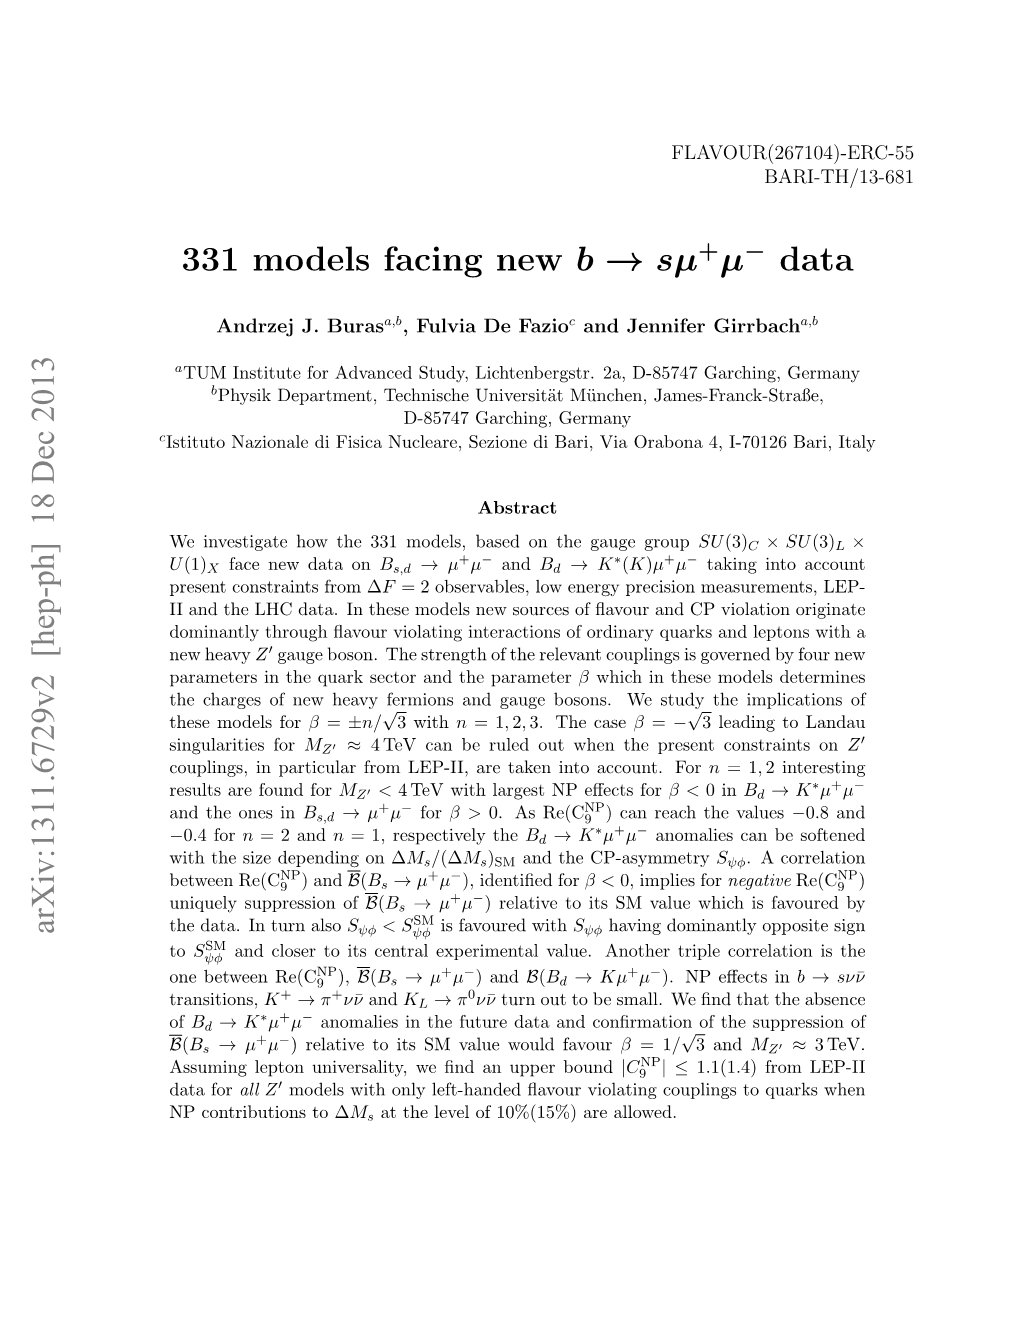 331 Models Facing New B → Sµ Μ Data Arxiv:1311.6729V2 [Hep-Ph] 18 Dec 2013